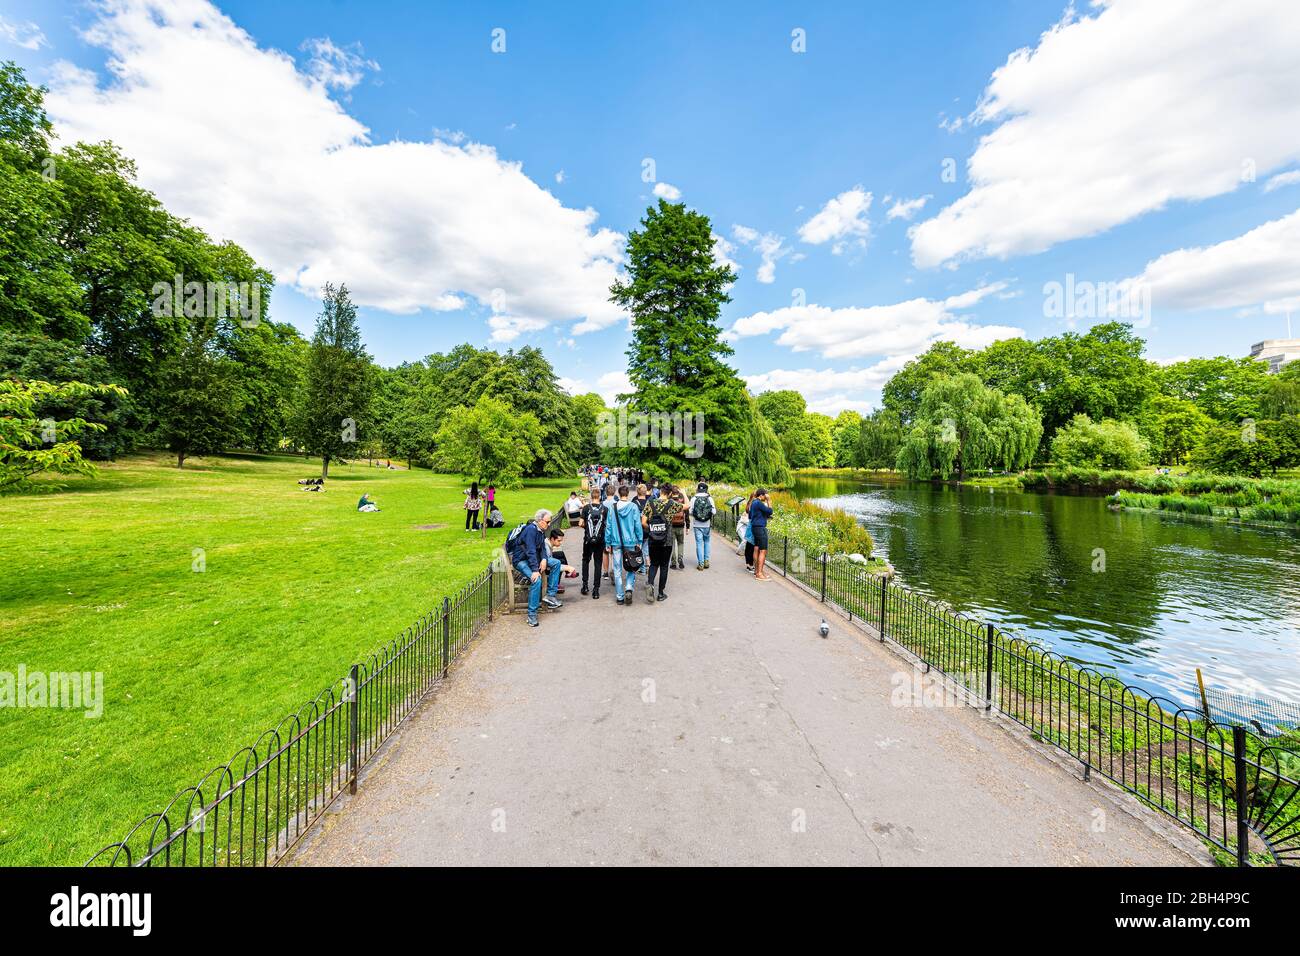 Londra, UK - 21 giugno 2018: Saint James Park verde erba e alberi in estate soleggiata con molte persone a piedi sul marciapiede da stagno fiume acqua Foto Stock